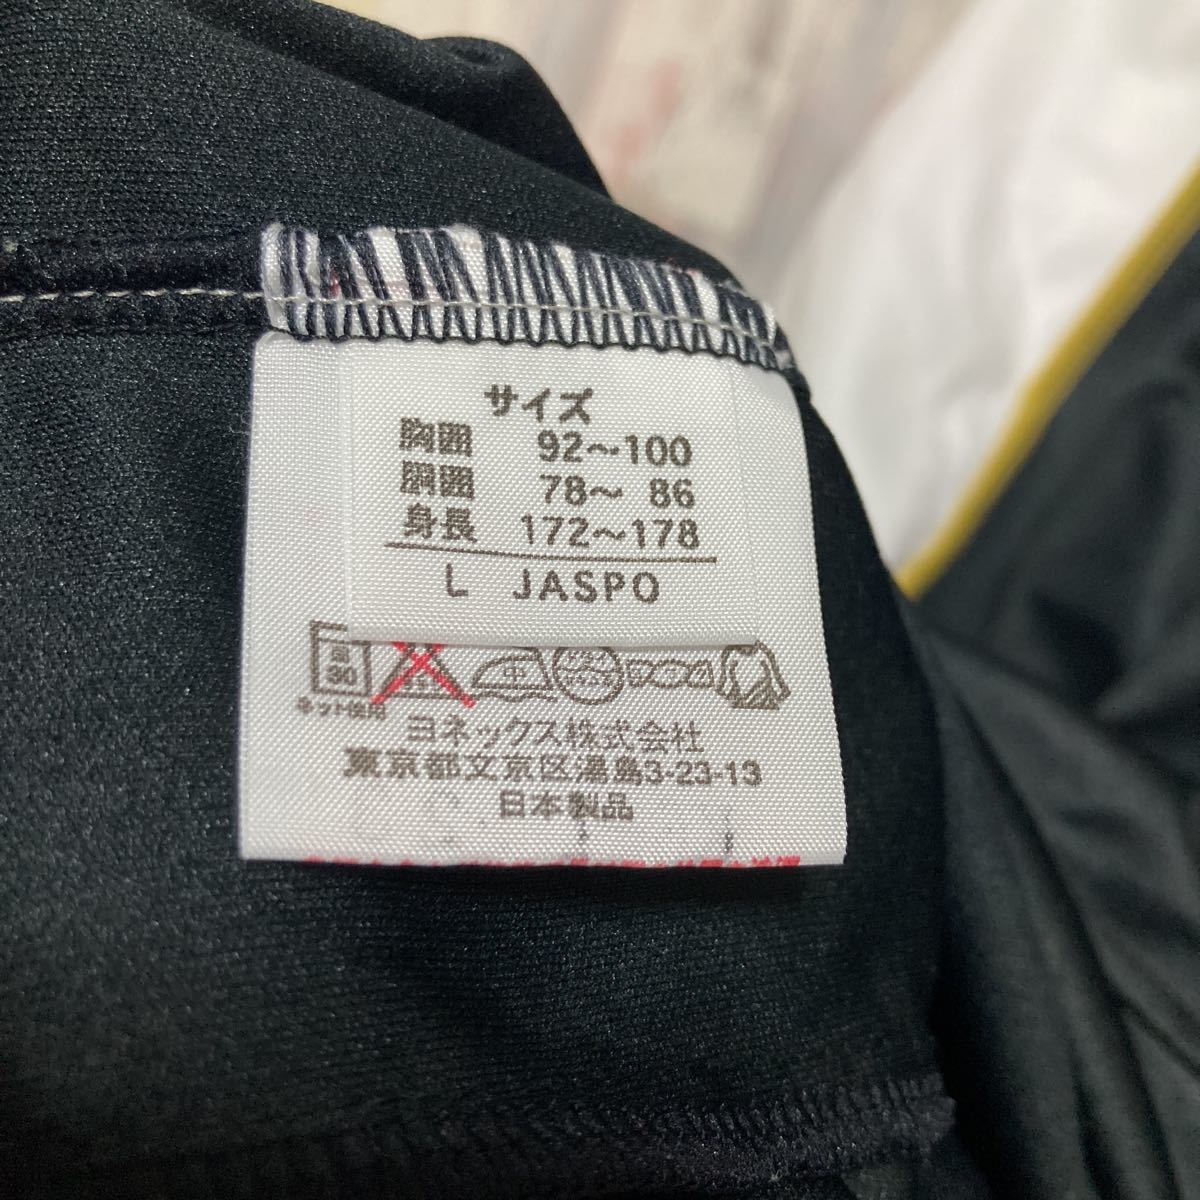  Yonex YONEX jersey jacket size:L black tennis bato Minton 220528-7②